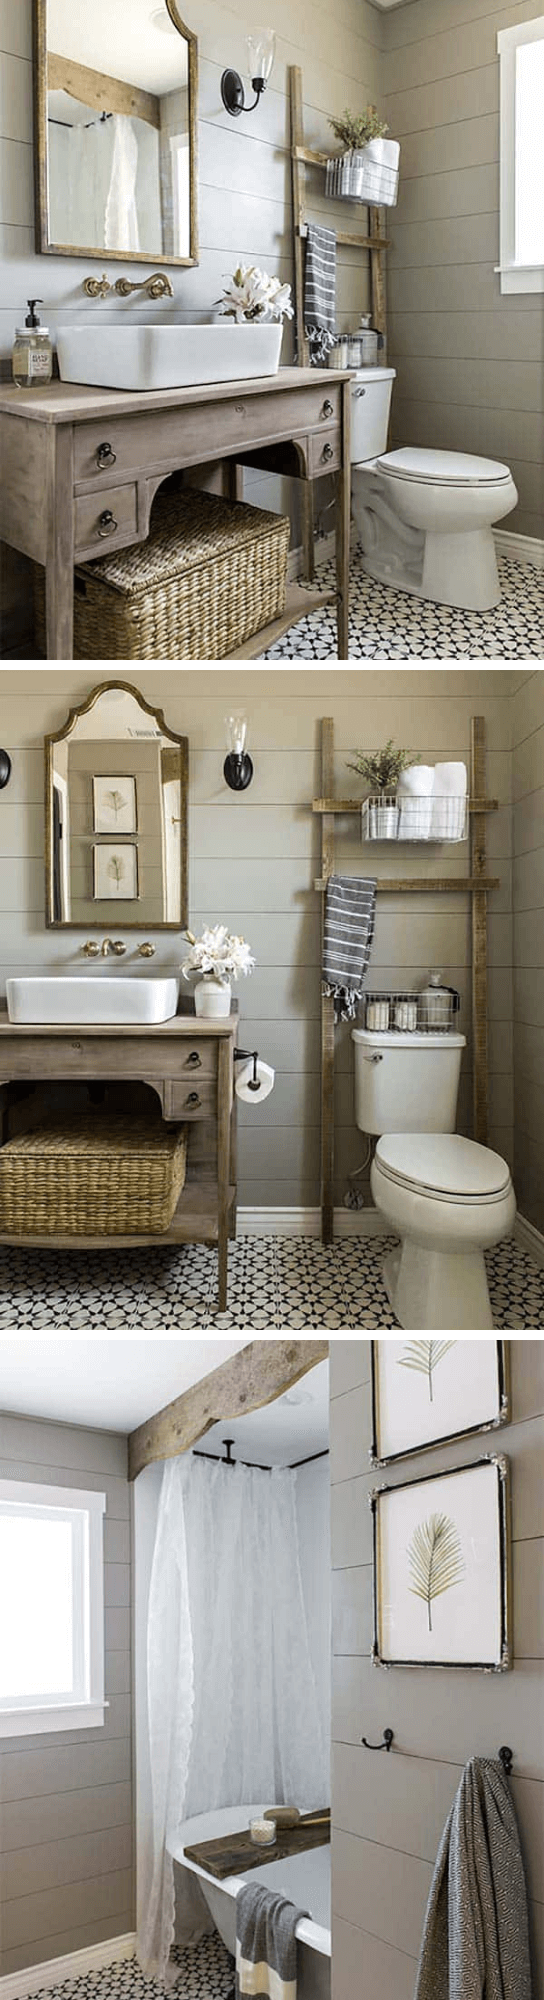 Charming Cottage Style Bathroom Ideas Rustic Wood Cottage Bathroom Style